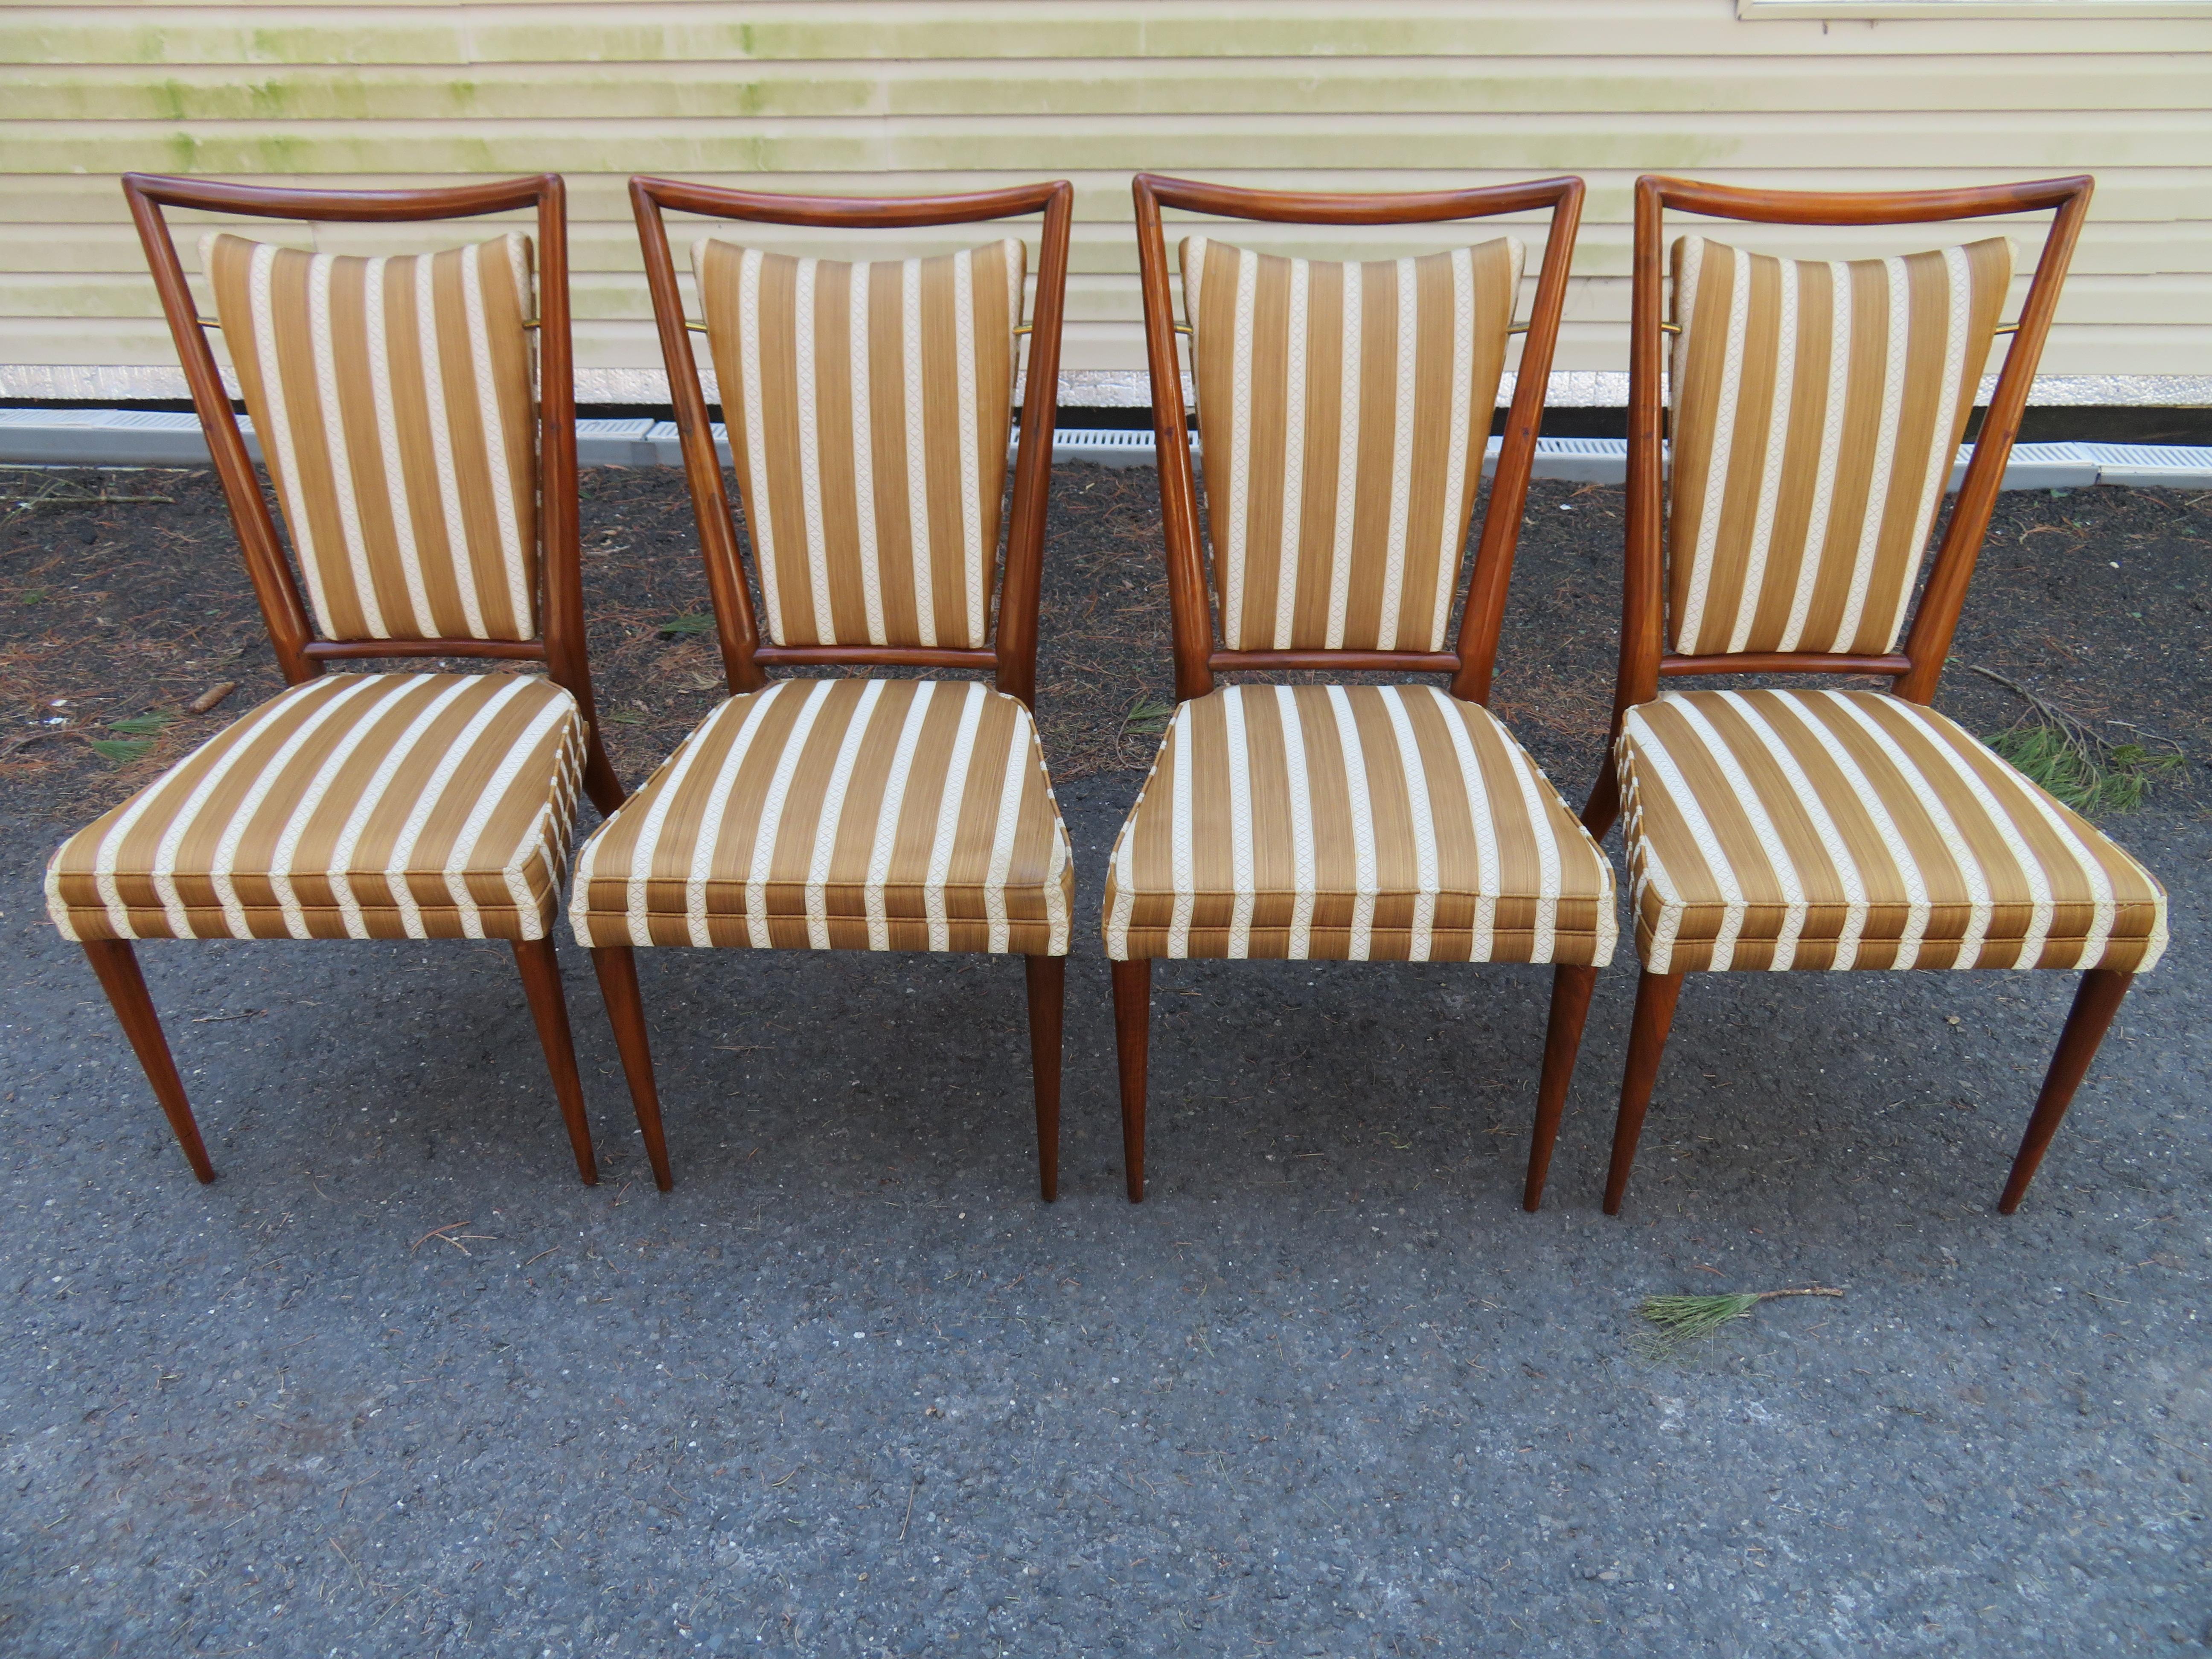 Satz von sechs modernistischen Widdicomb-Esszimmerstühlen aus Nussbaum der späten 1950er Jahre mit gepolstertem Sitz und schwimmenden Rückenkissen, die von Messingbeschlägen gehalten werden. Entworfen von J. Stuart Clingman. Die sehnigen Linien, die